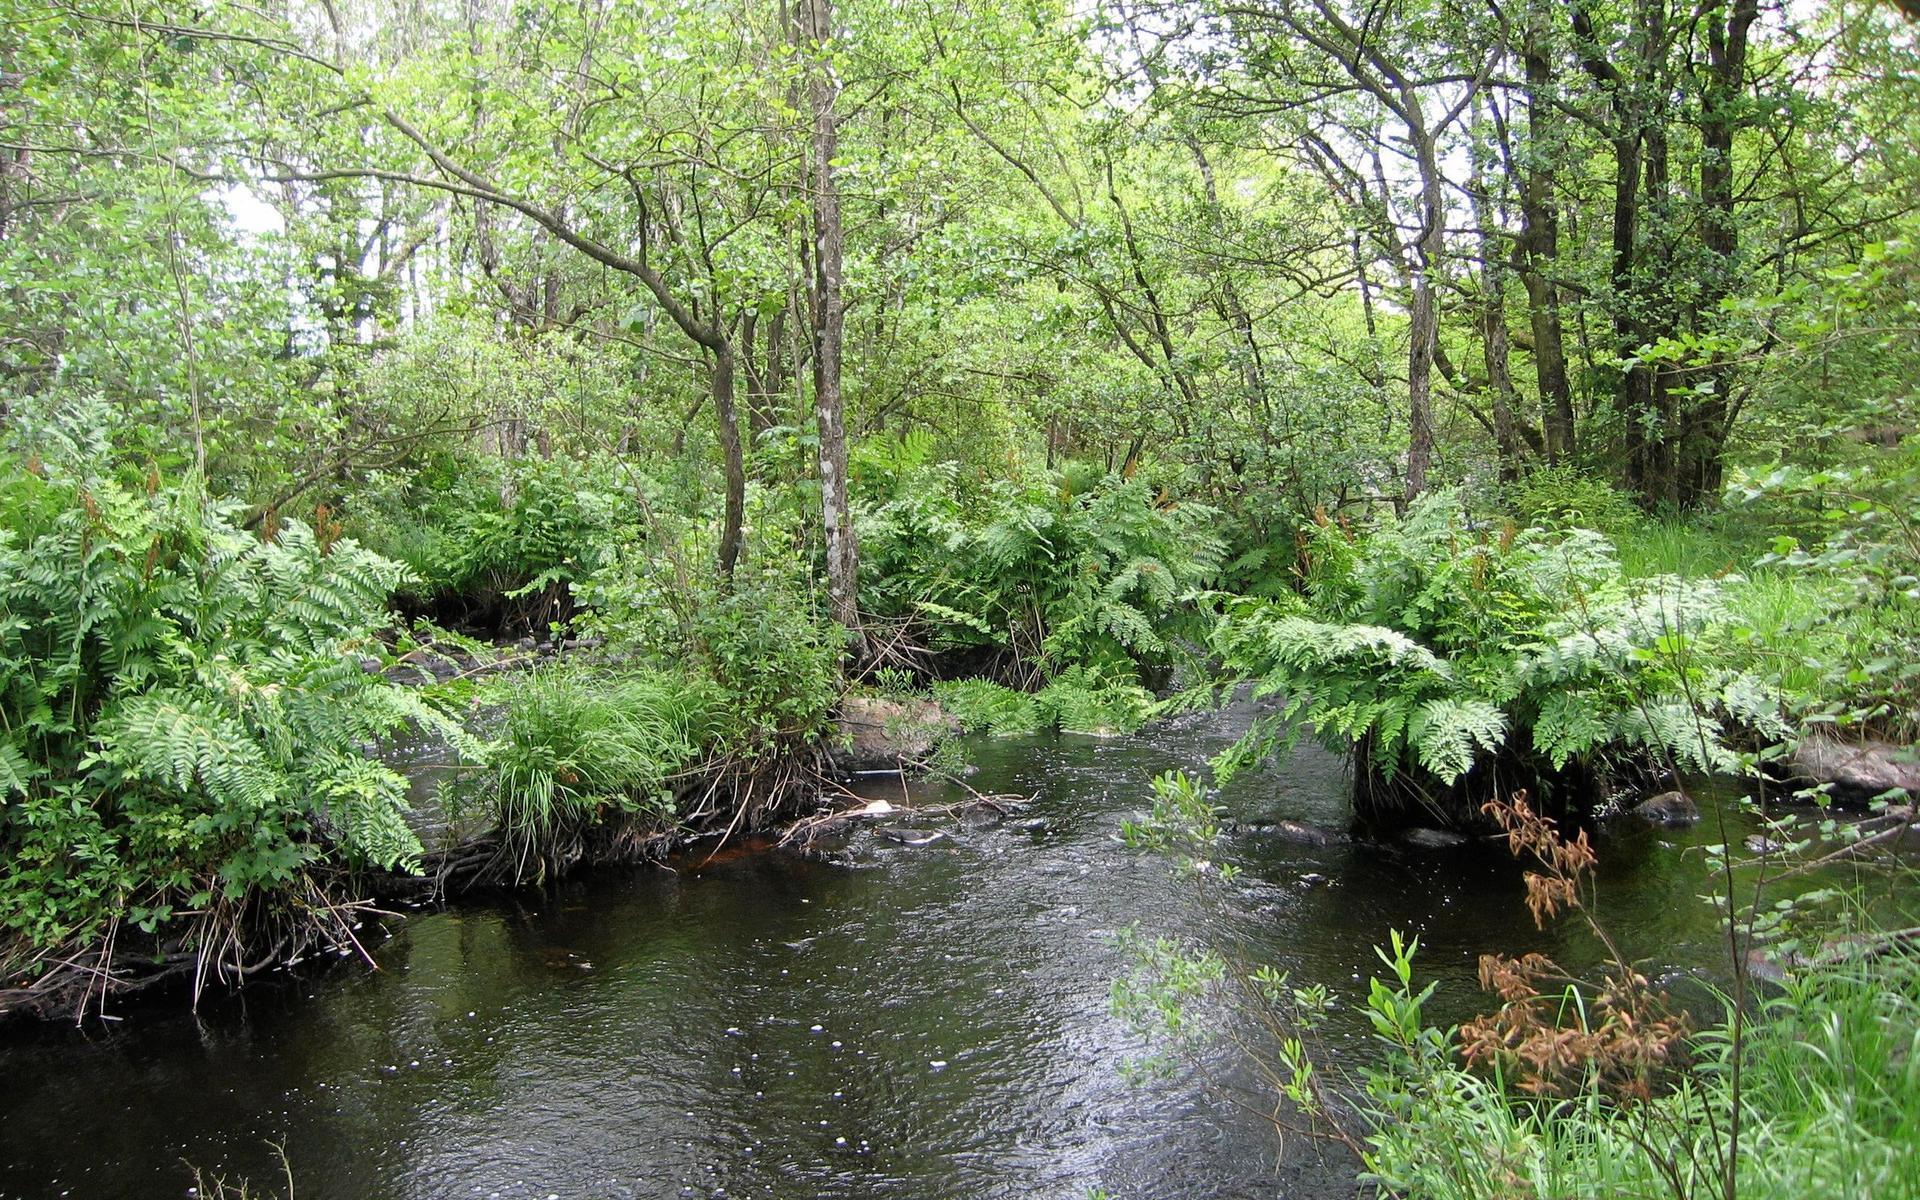 Kvillområden med safsa. Kvillområden kallas det när vattendraget delar upp sig i flera grenar med små öar emellan. Intill växer svämskog.